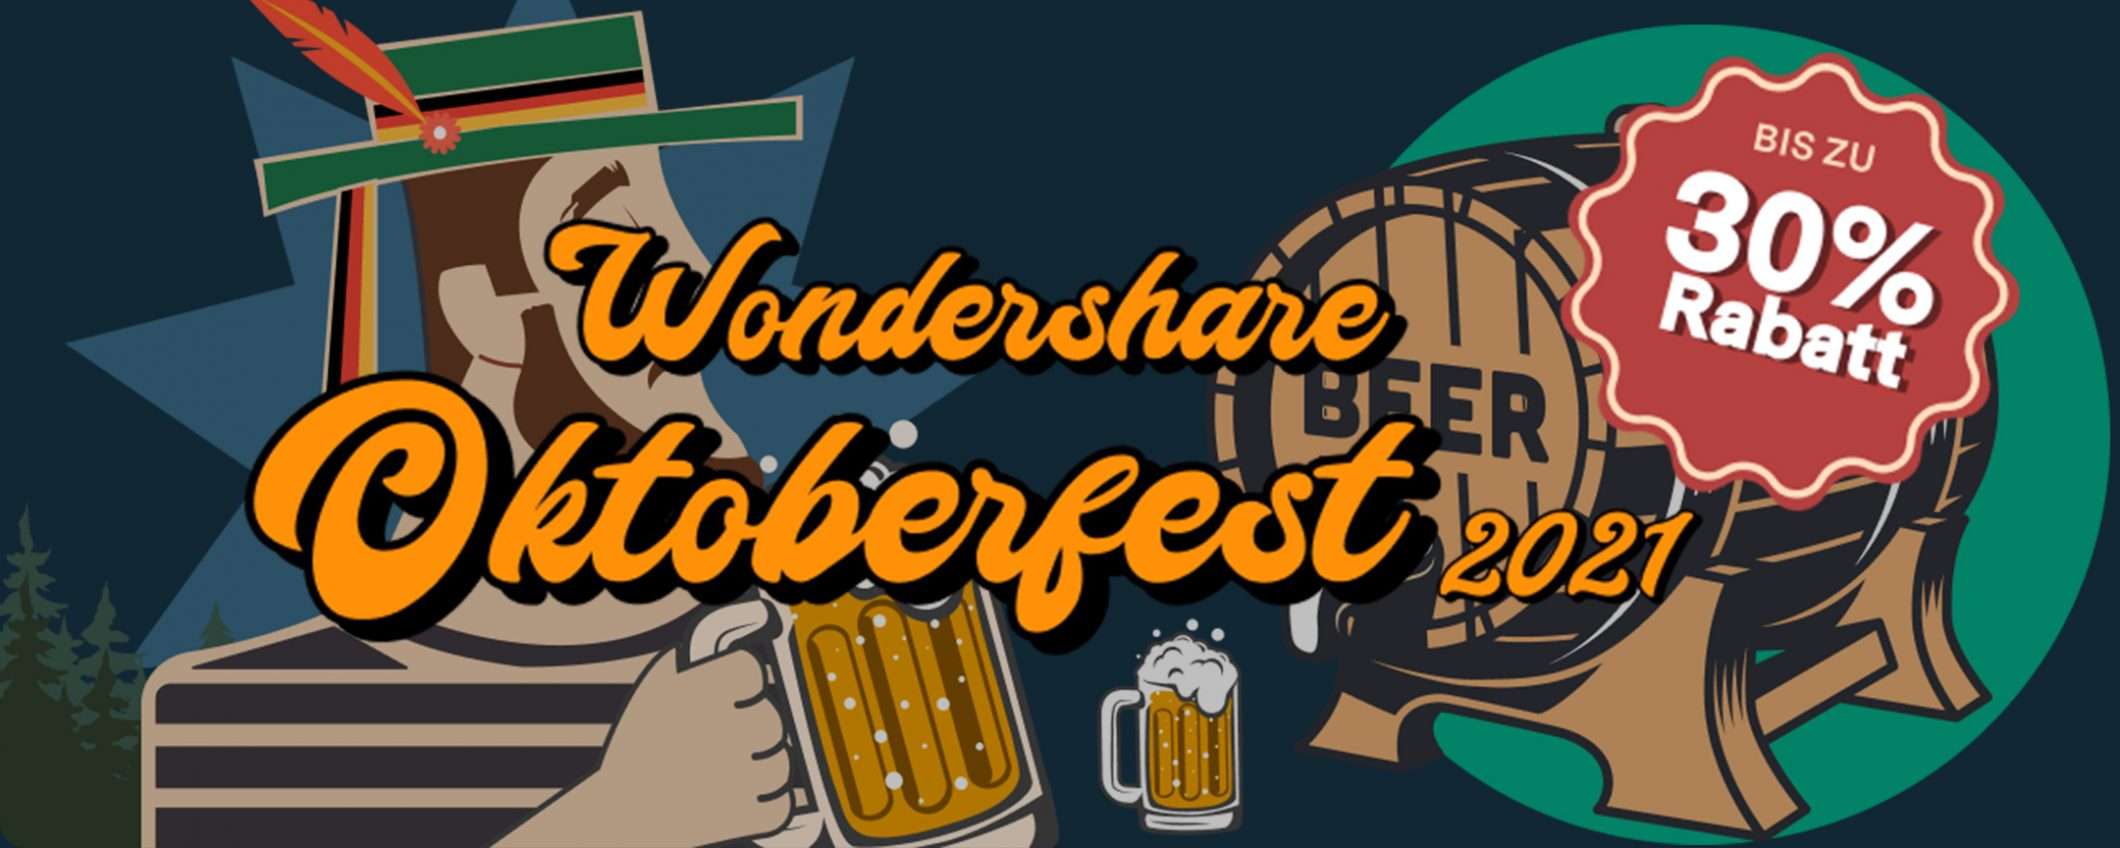 Festeggia l'Oktoberfest con Wondershare: tutti i software in sconto fino al 30%